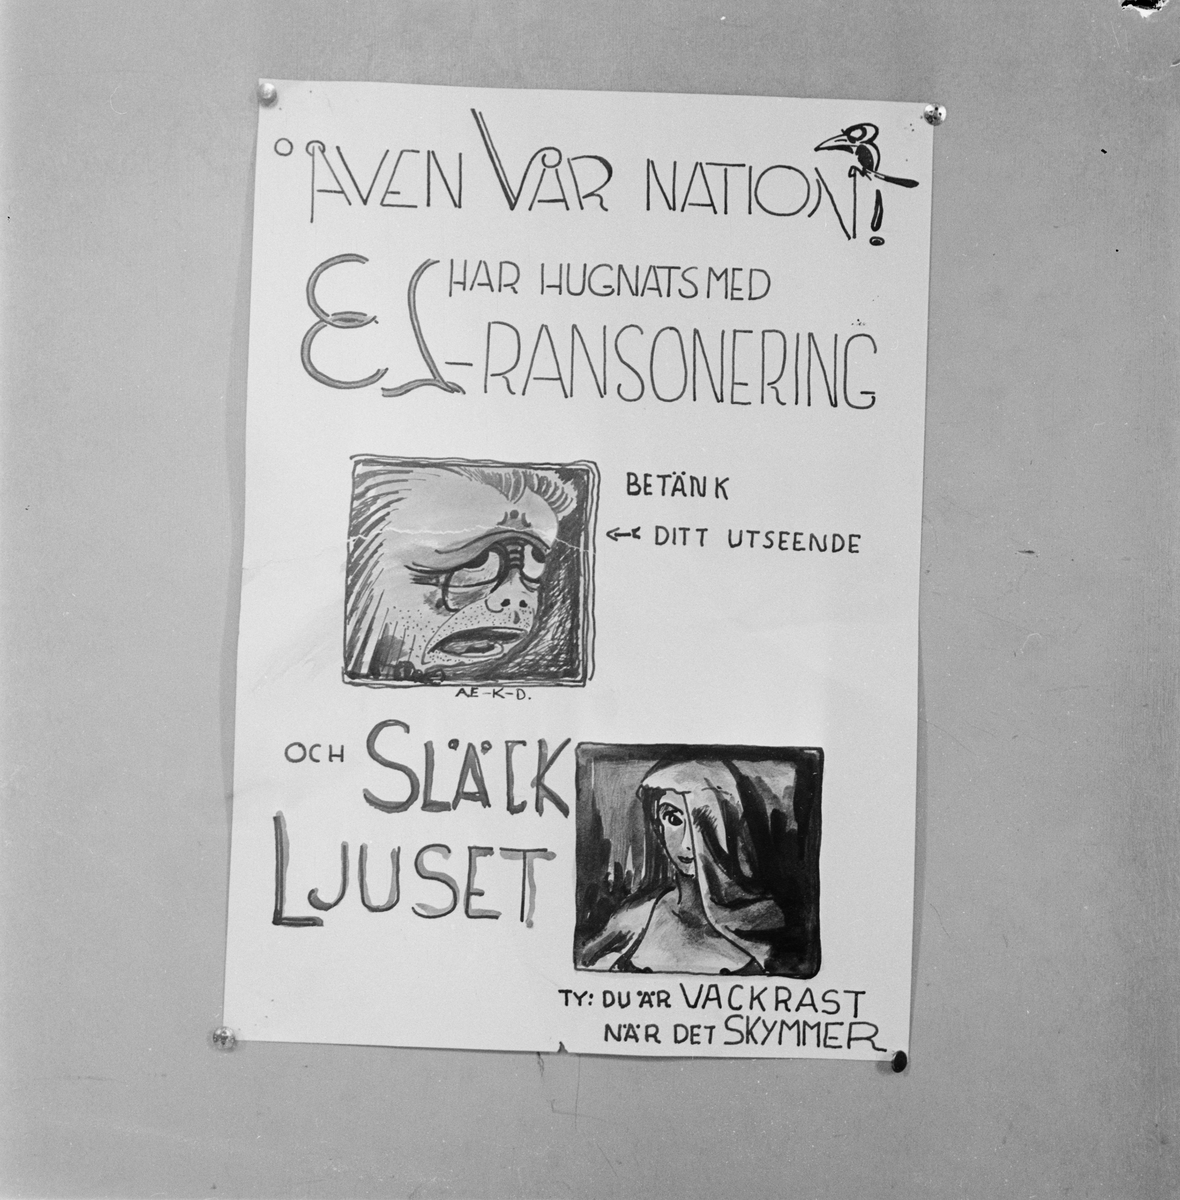 Värmlands nation, affisch om elransonering, Uppsala